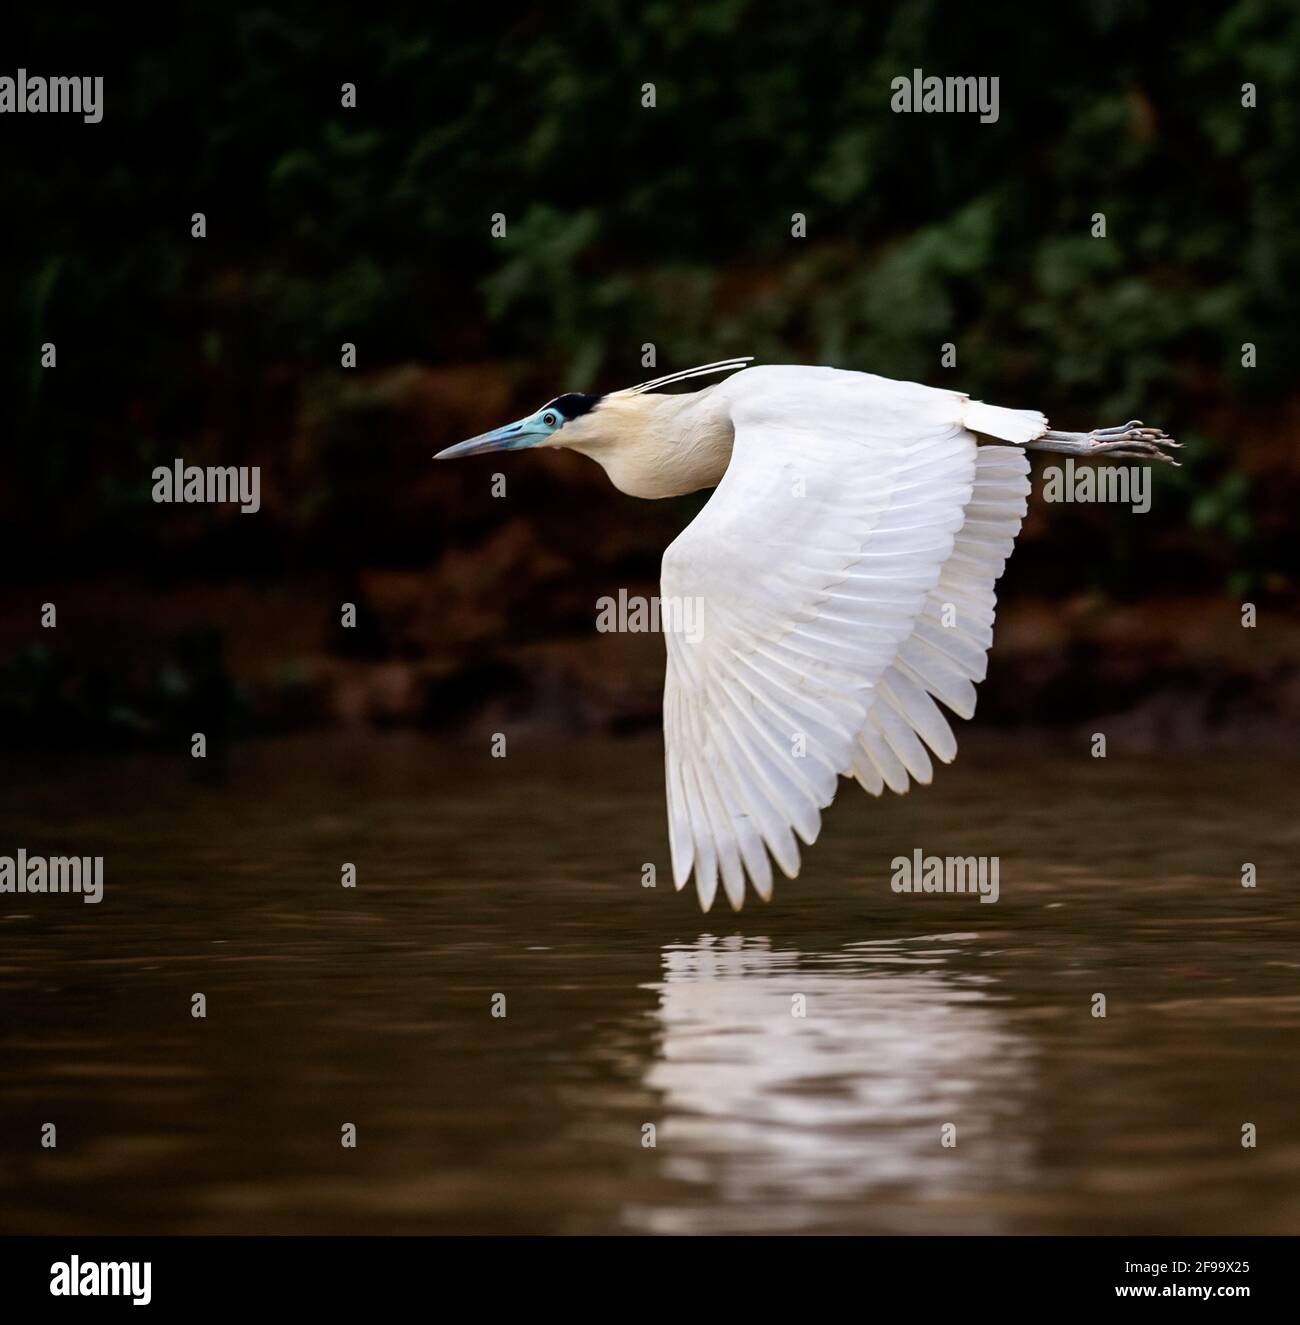 Einsame, kappte Reiher fliegen dicht über dem Wasser - mit Spiegelung der Flügel im Wasser Stockfoto